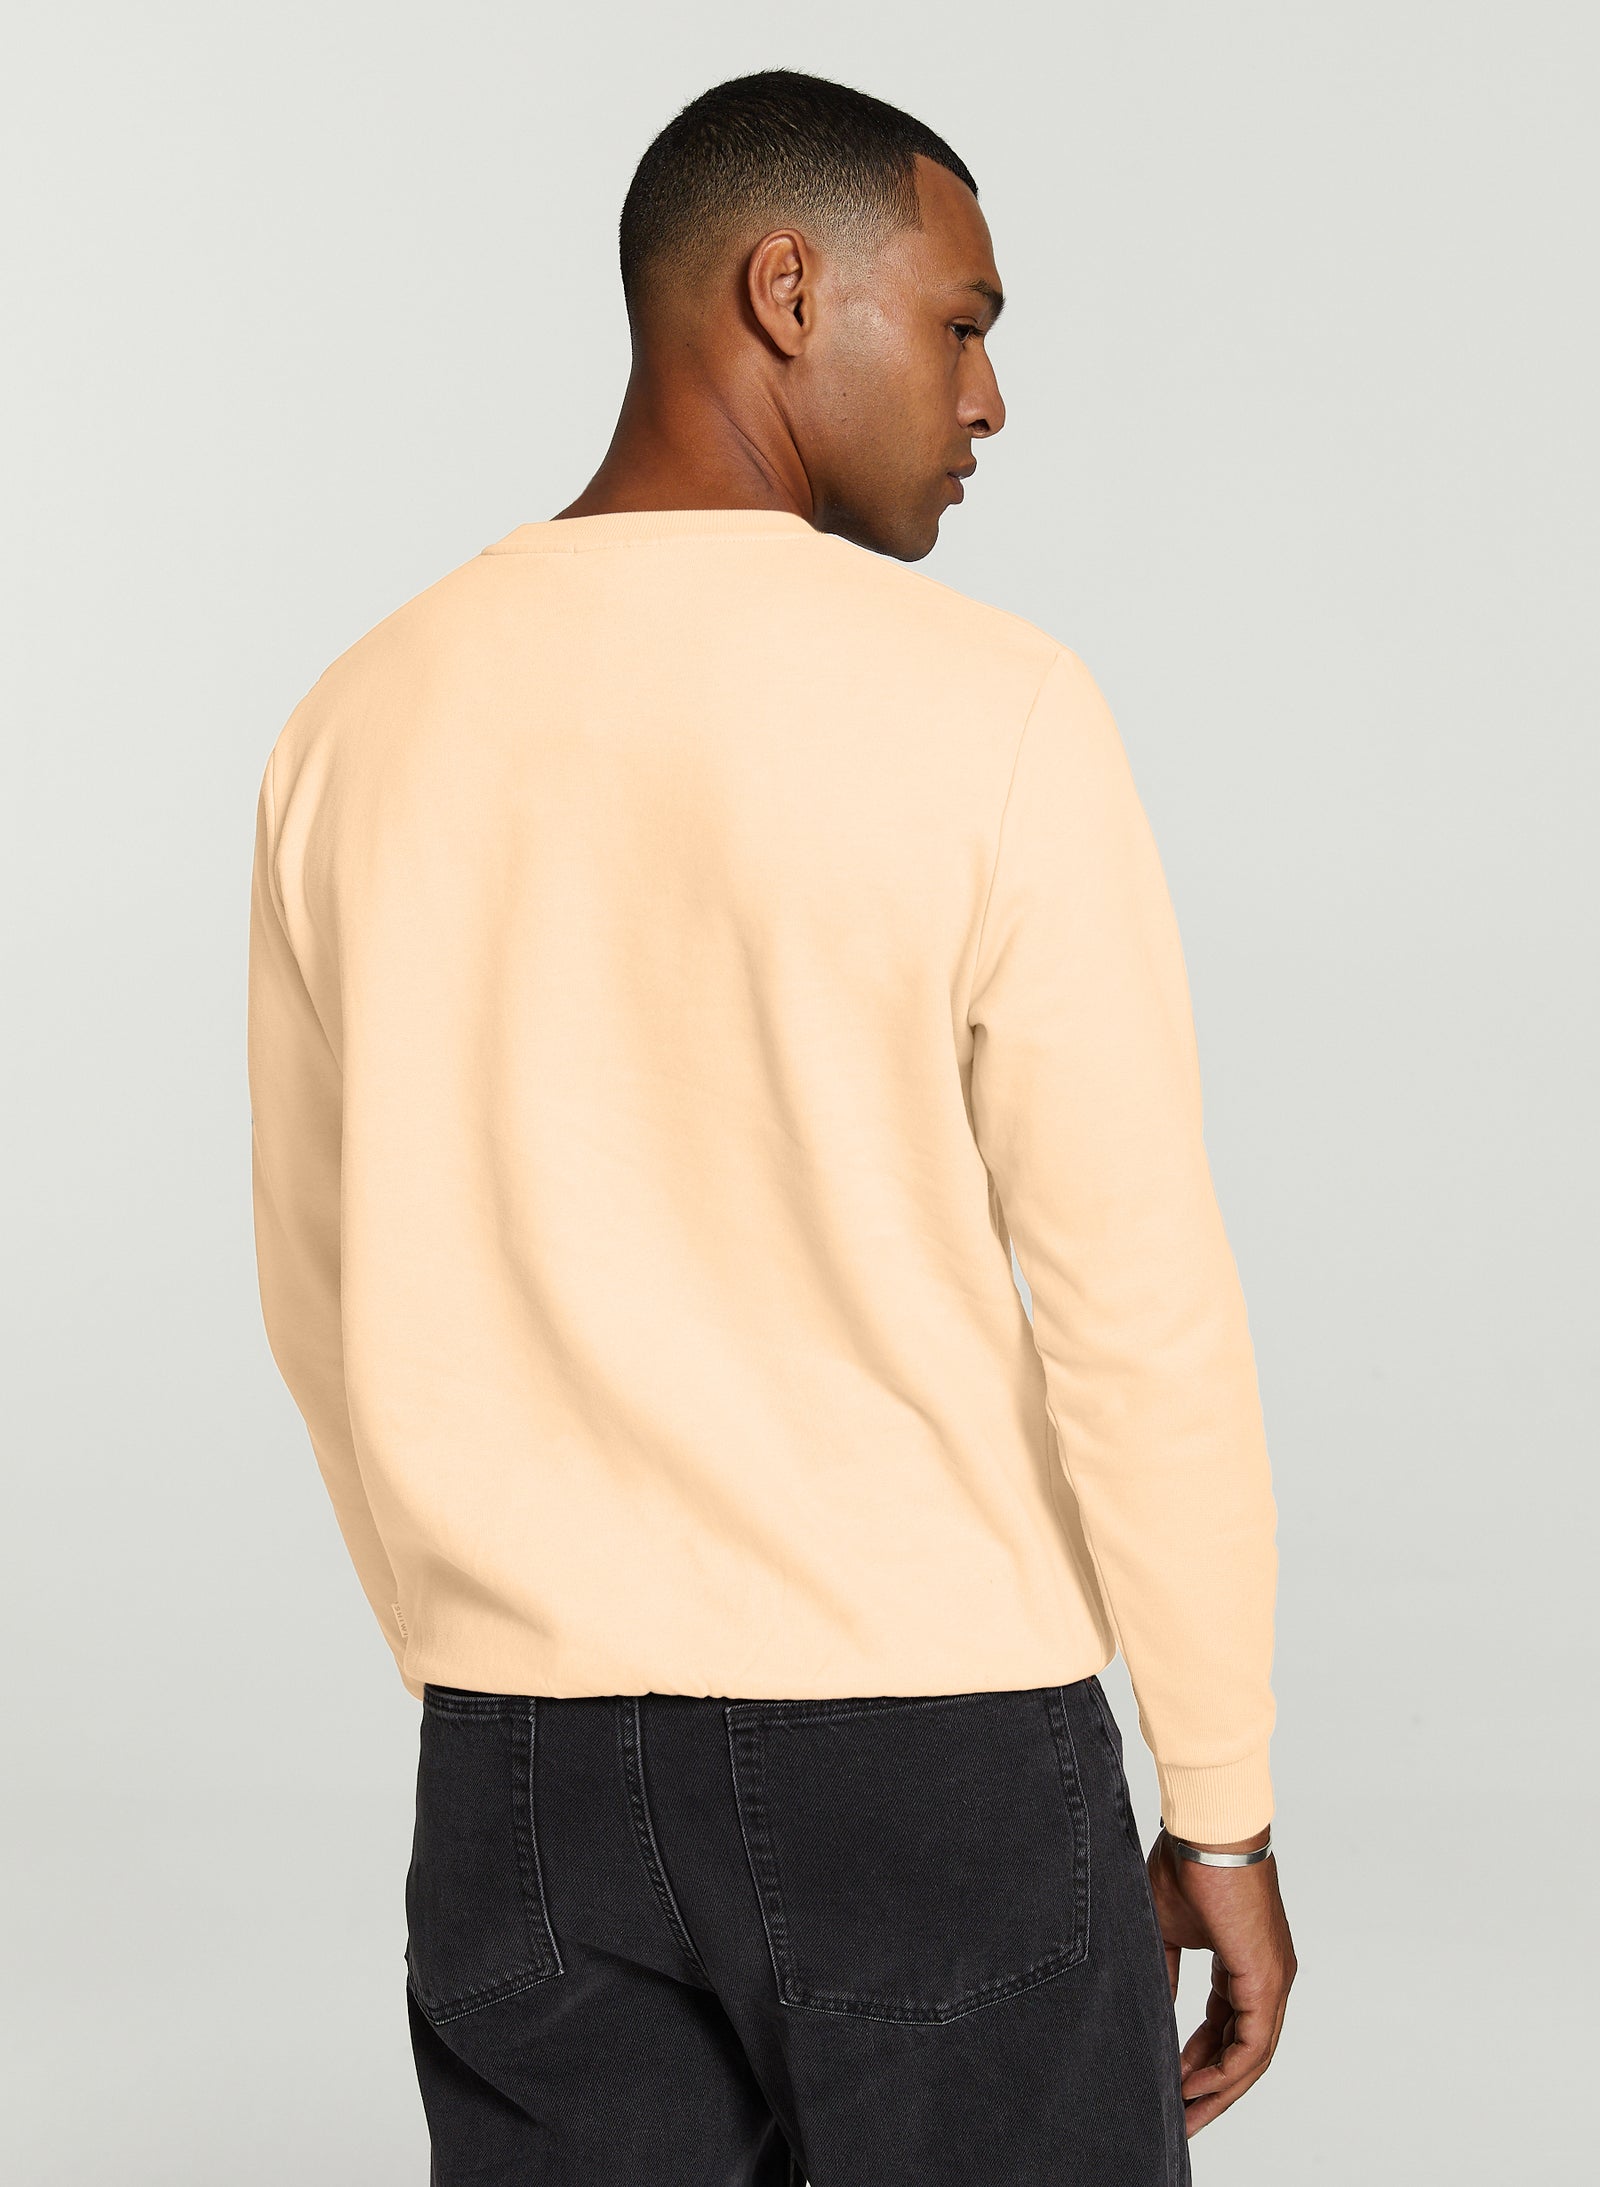 Unisex sunday sweater